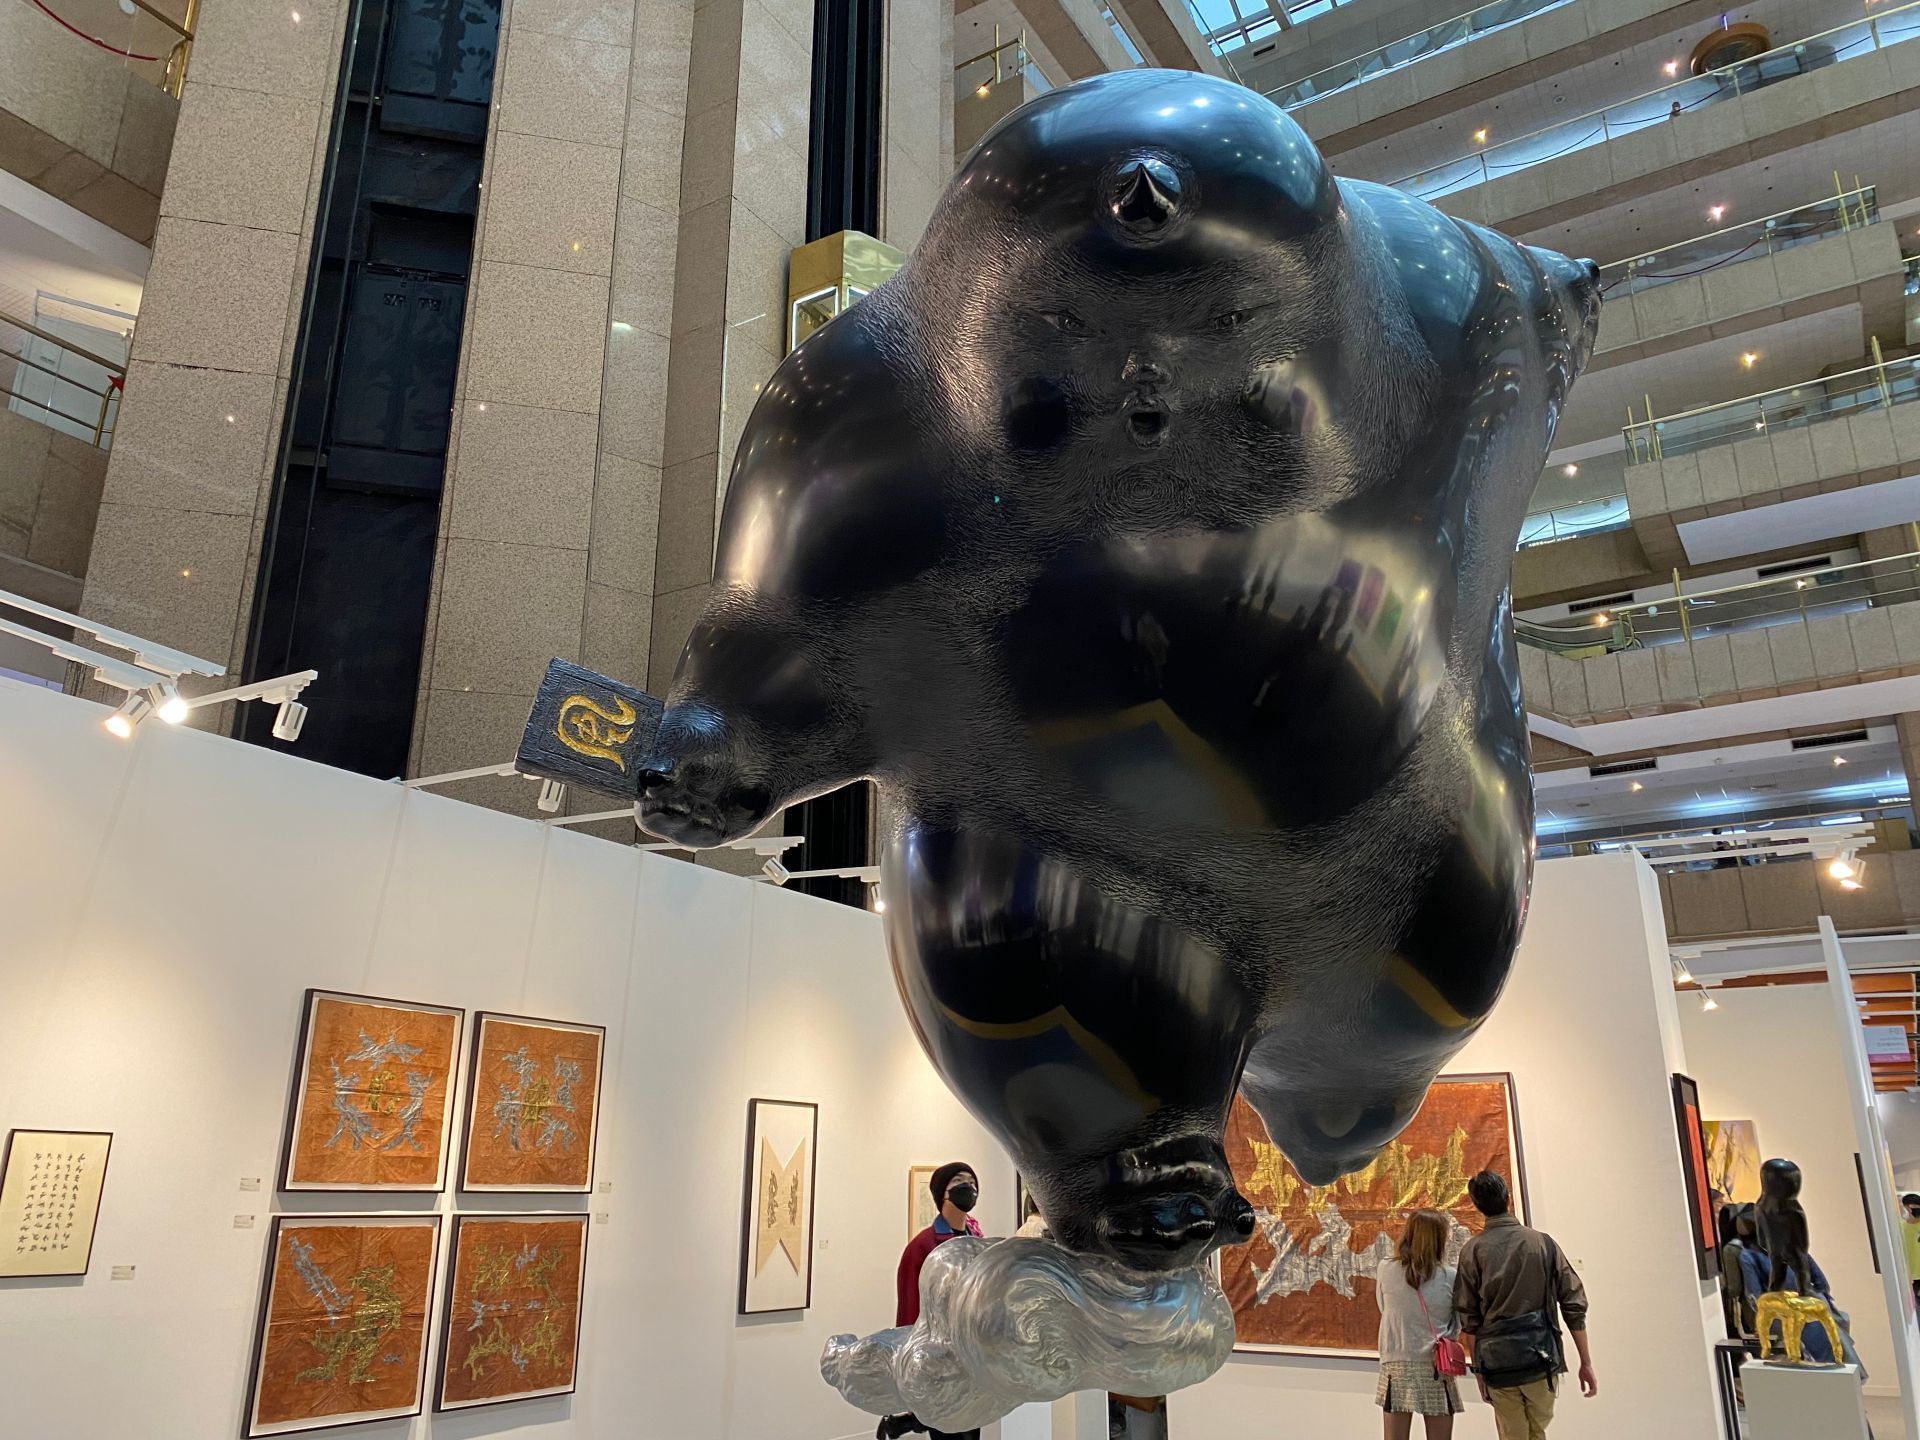 ▴李真的《風神》於 2021 台北藝術博覽會展出。圖片來源／Cathy 拍攝於 2021 台北藝術博覽會